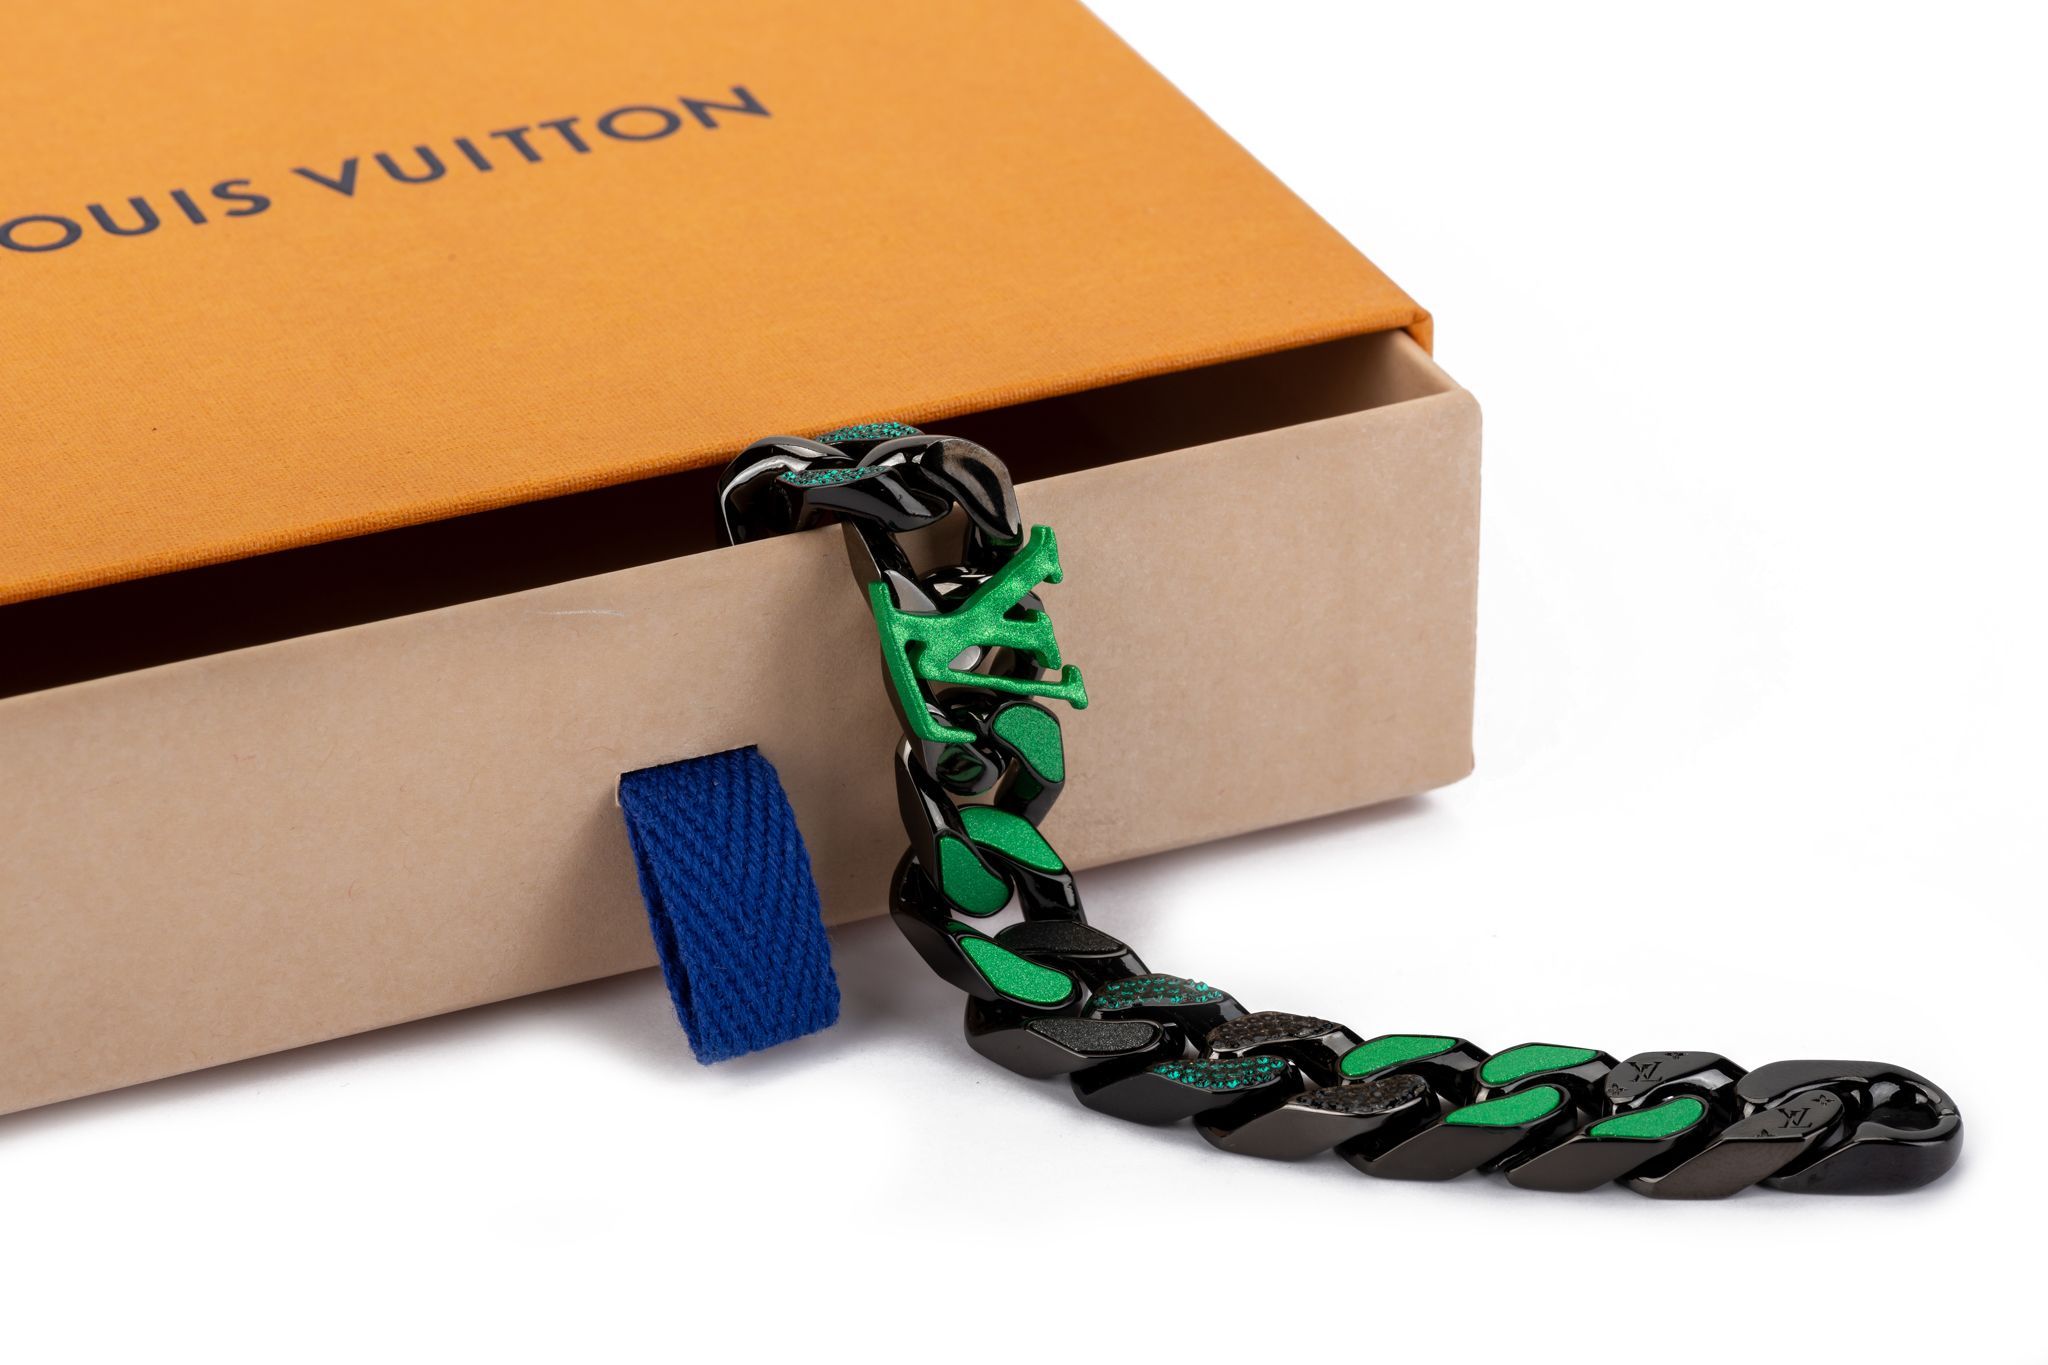 Virgil Abloh Designs Louis Vuitton Bracelets For Charity, 52% OFF